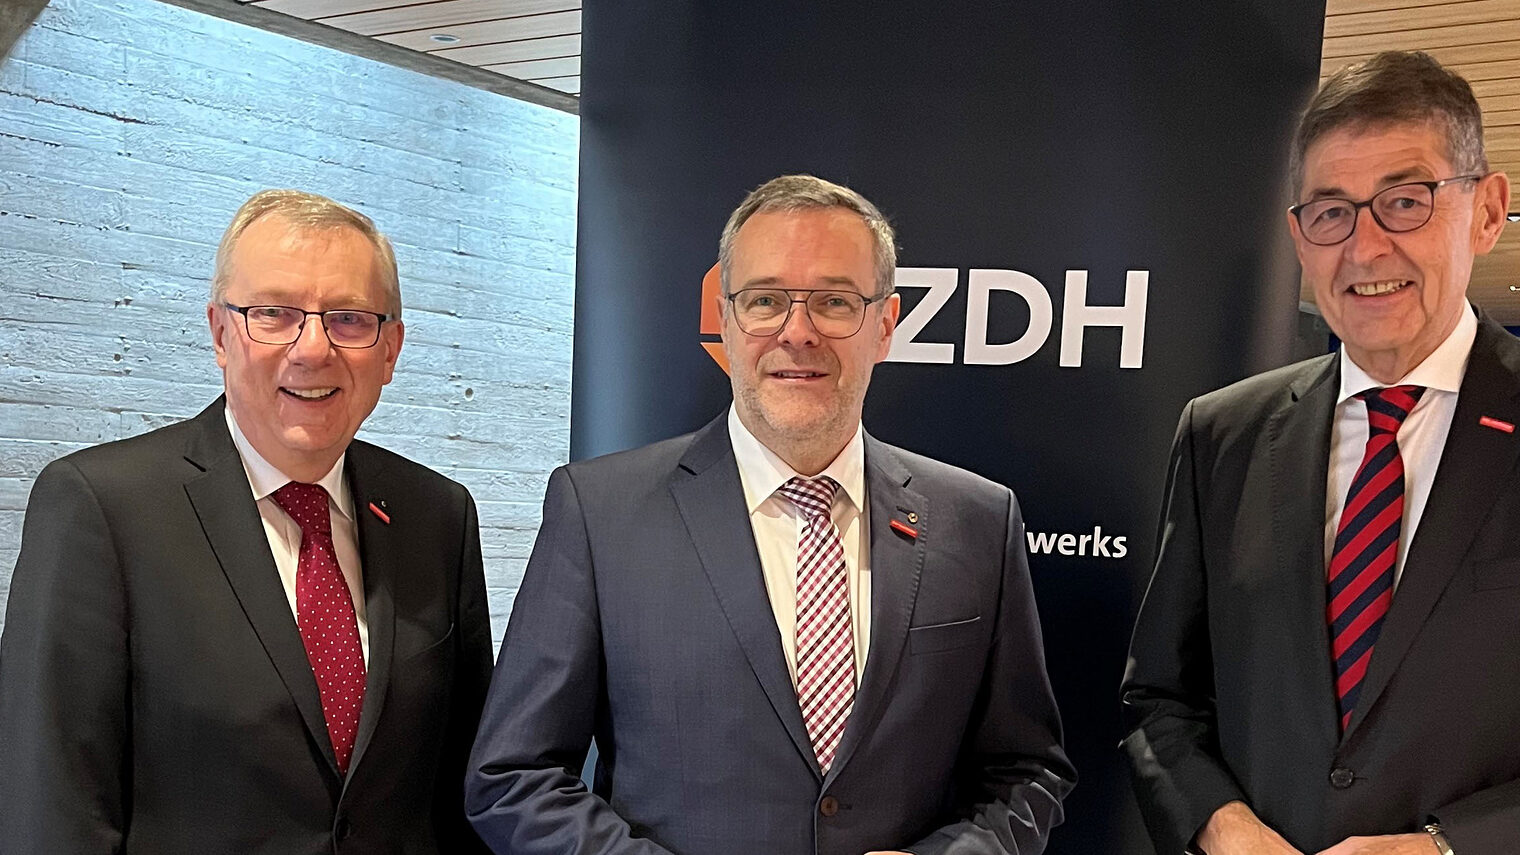 Gratulierten dem neuen ZDH-Präsidenten Jörg Dittrich zur Wahl: HWK-Hauptgeschäftsführer Jürgen Kilger (li.) und HWK-Präsident Dr. Georg Haber (re.).